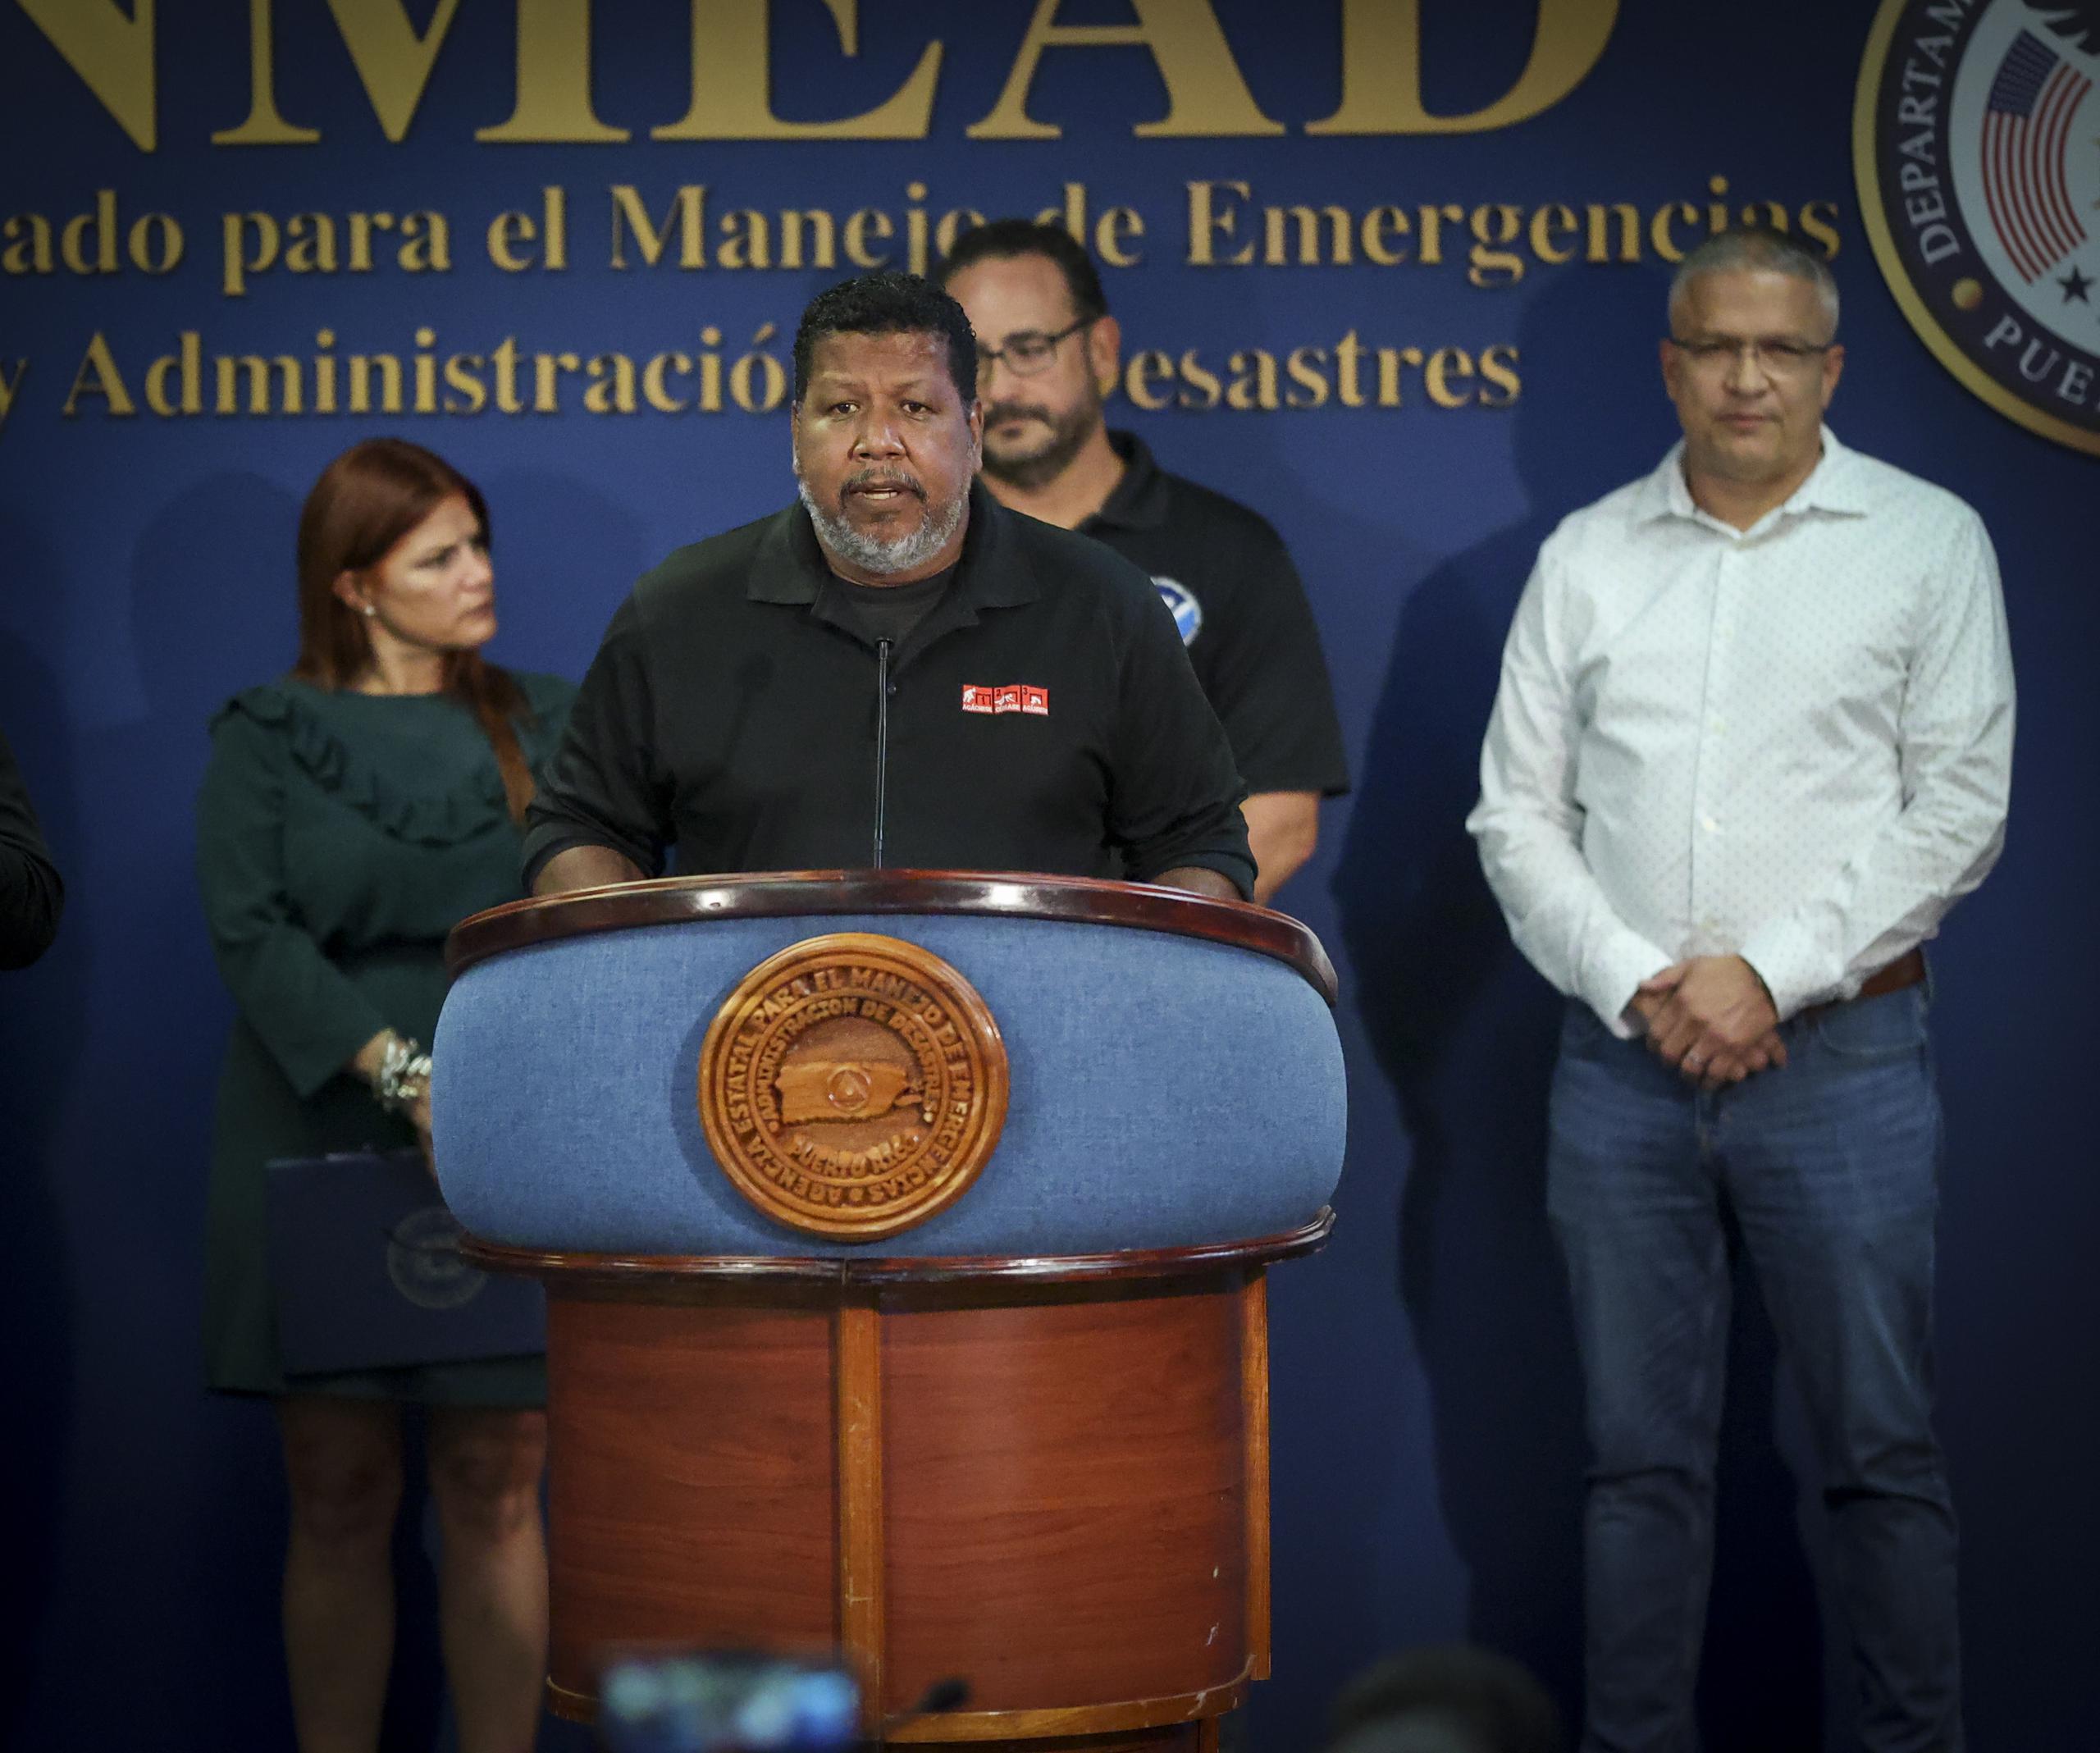 El comisionado de Manejo de Emergencias, Nino Correa, pidió a la ciudadanía que no bajen la guardia, aun se trate de una tormenta y no un huracán, mucho menos de la magnitud del huracán María.